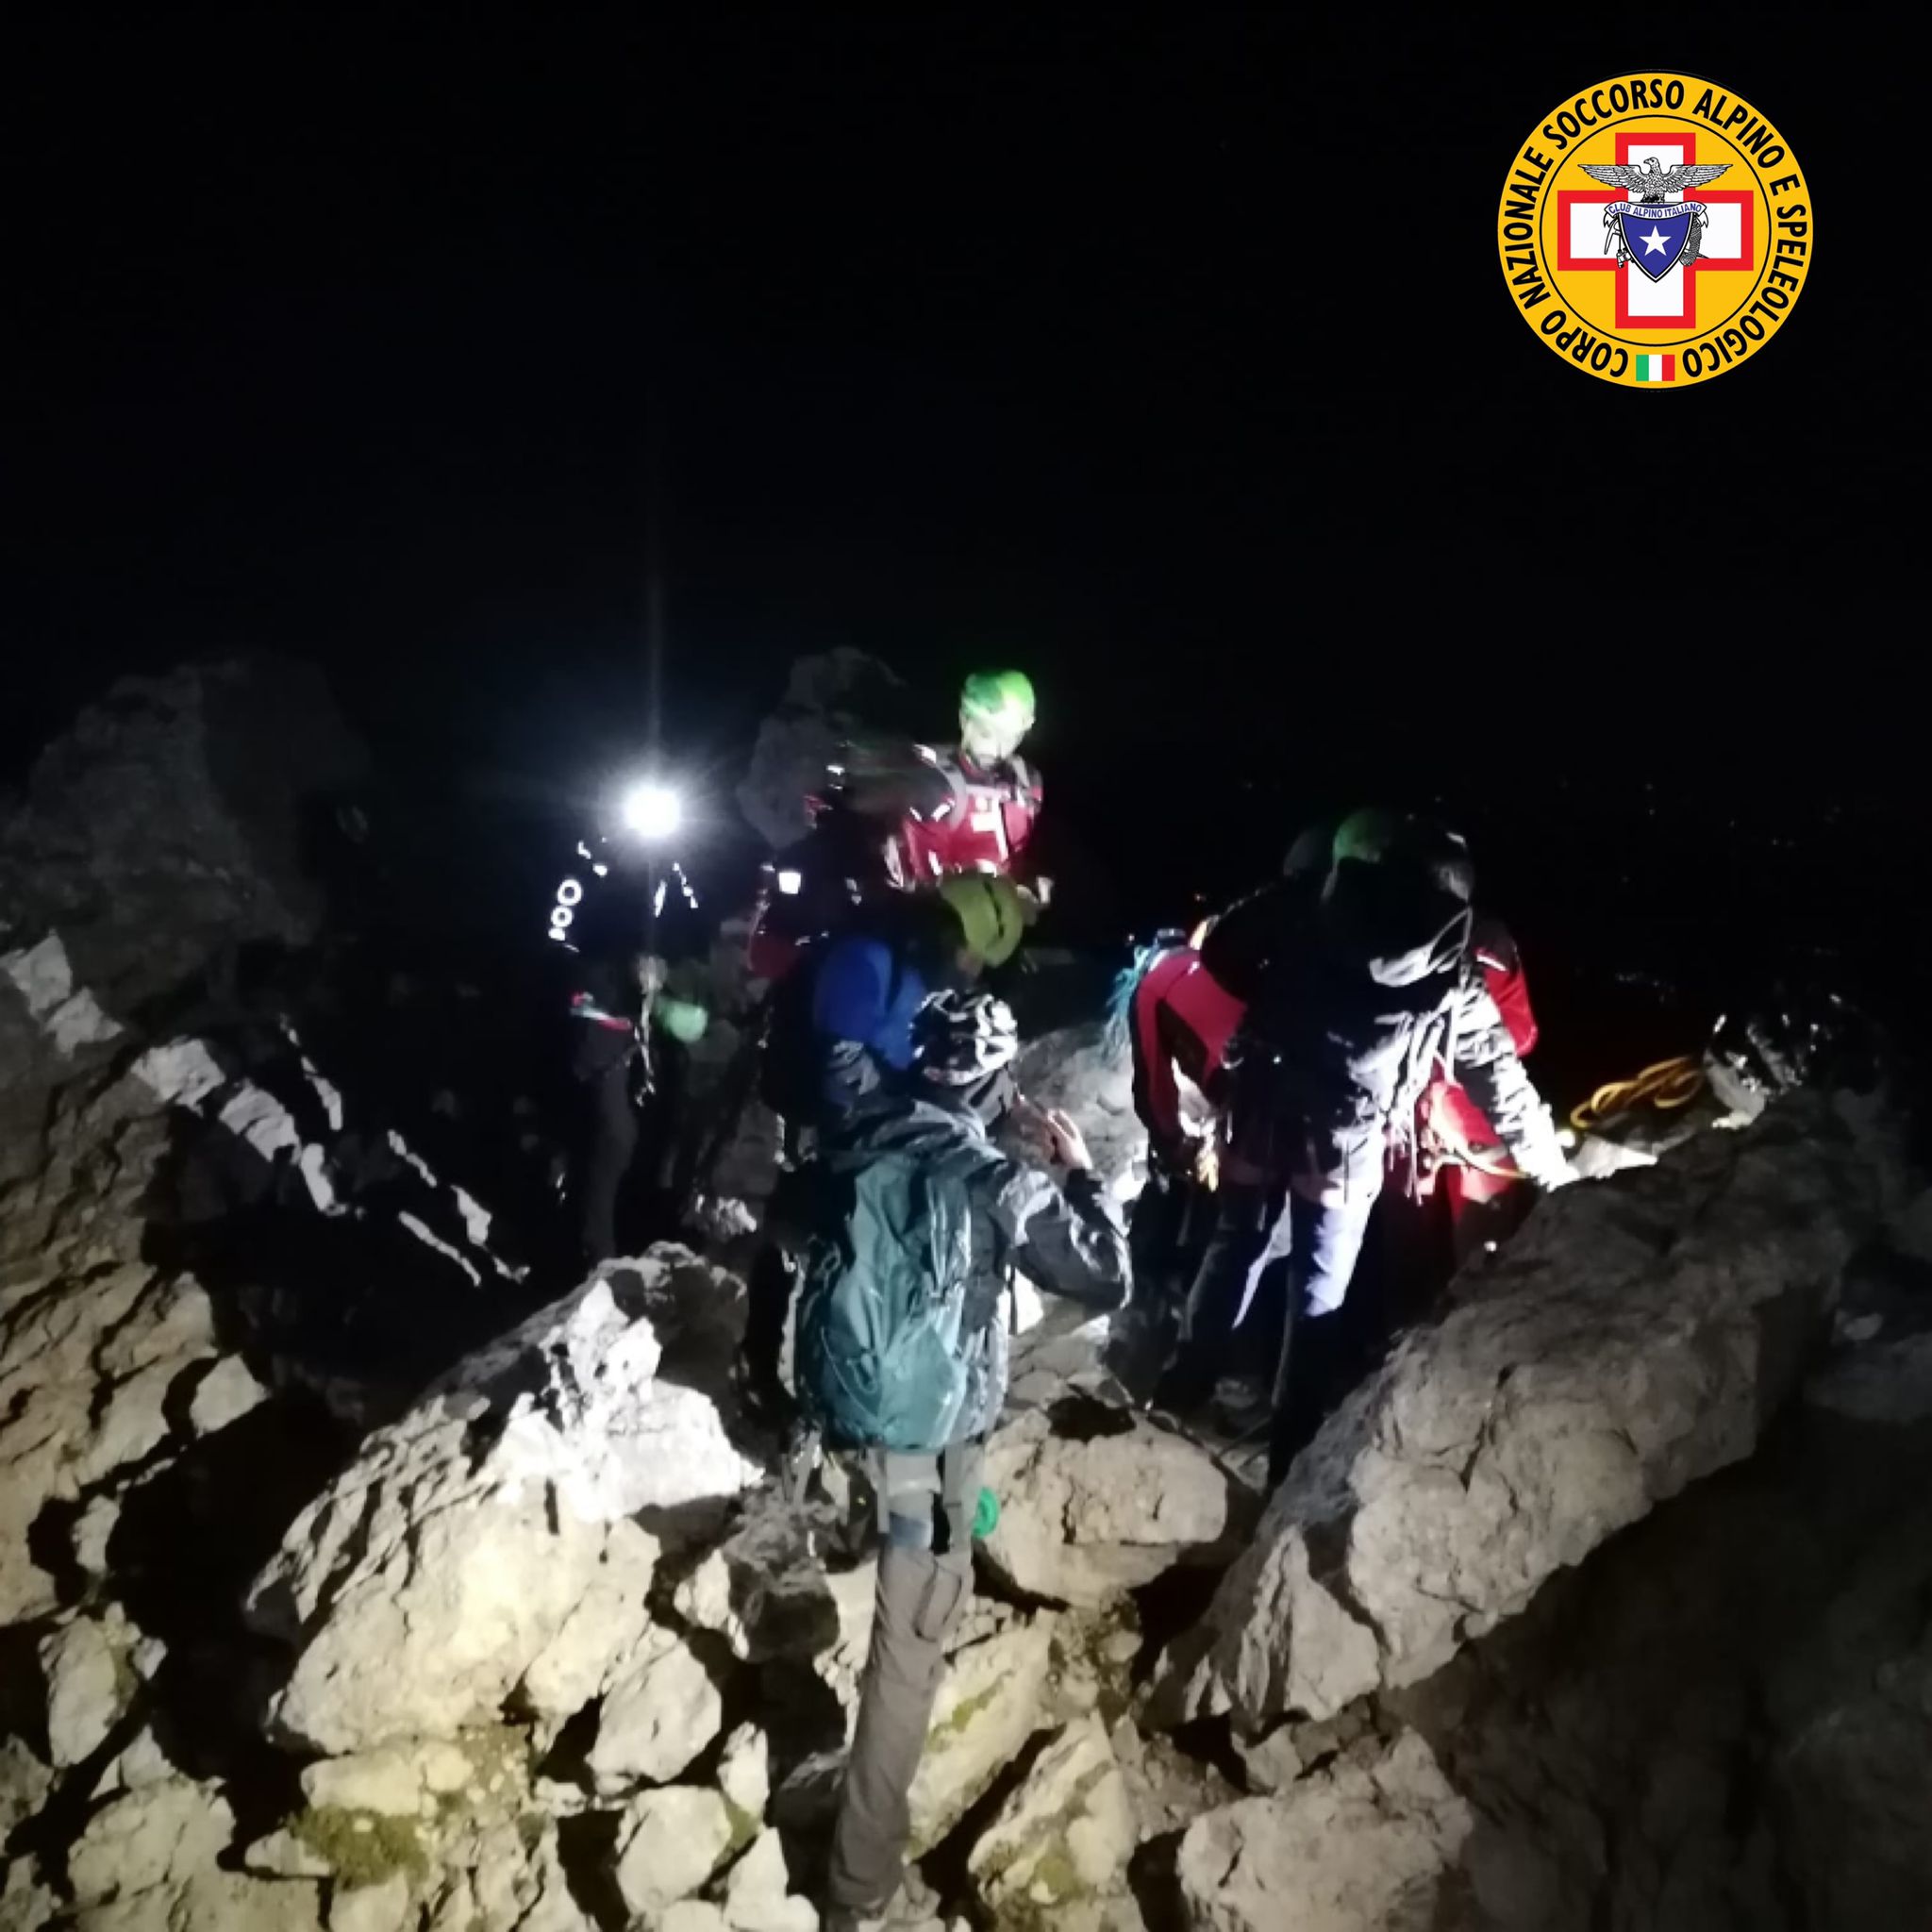 Soccorso Alpino, recuperati quattro ragazzi dispersi sul Gran Sasso